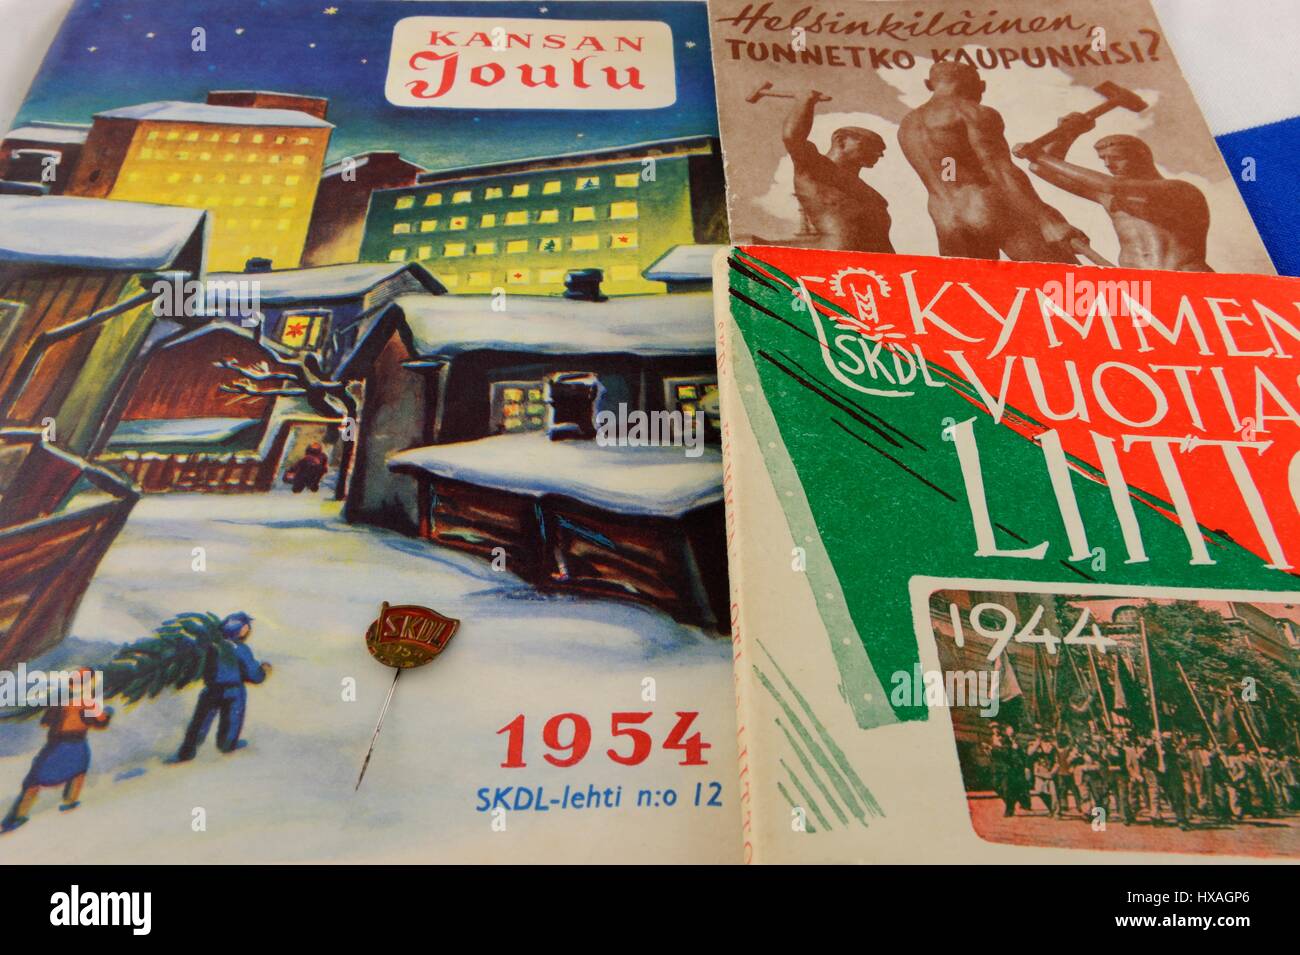 El pueblo finlandés de Unión Democrática (SKDL) fundada en 1944, celebra 10 años de aniversario en 1954. Kansan Joulu 1954, la Navidad de la gente- m Foto de stock